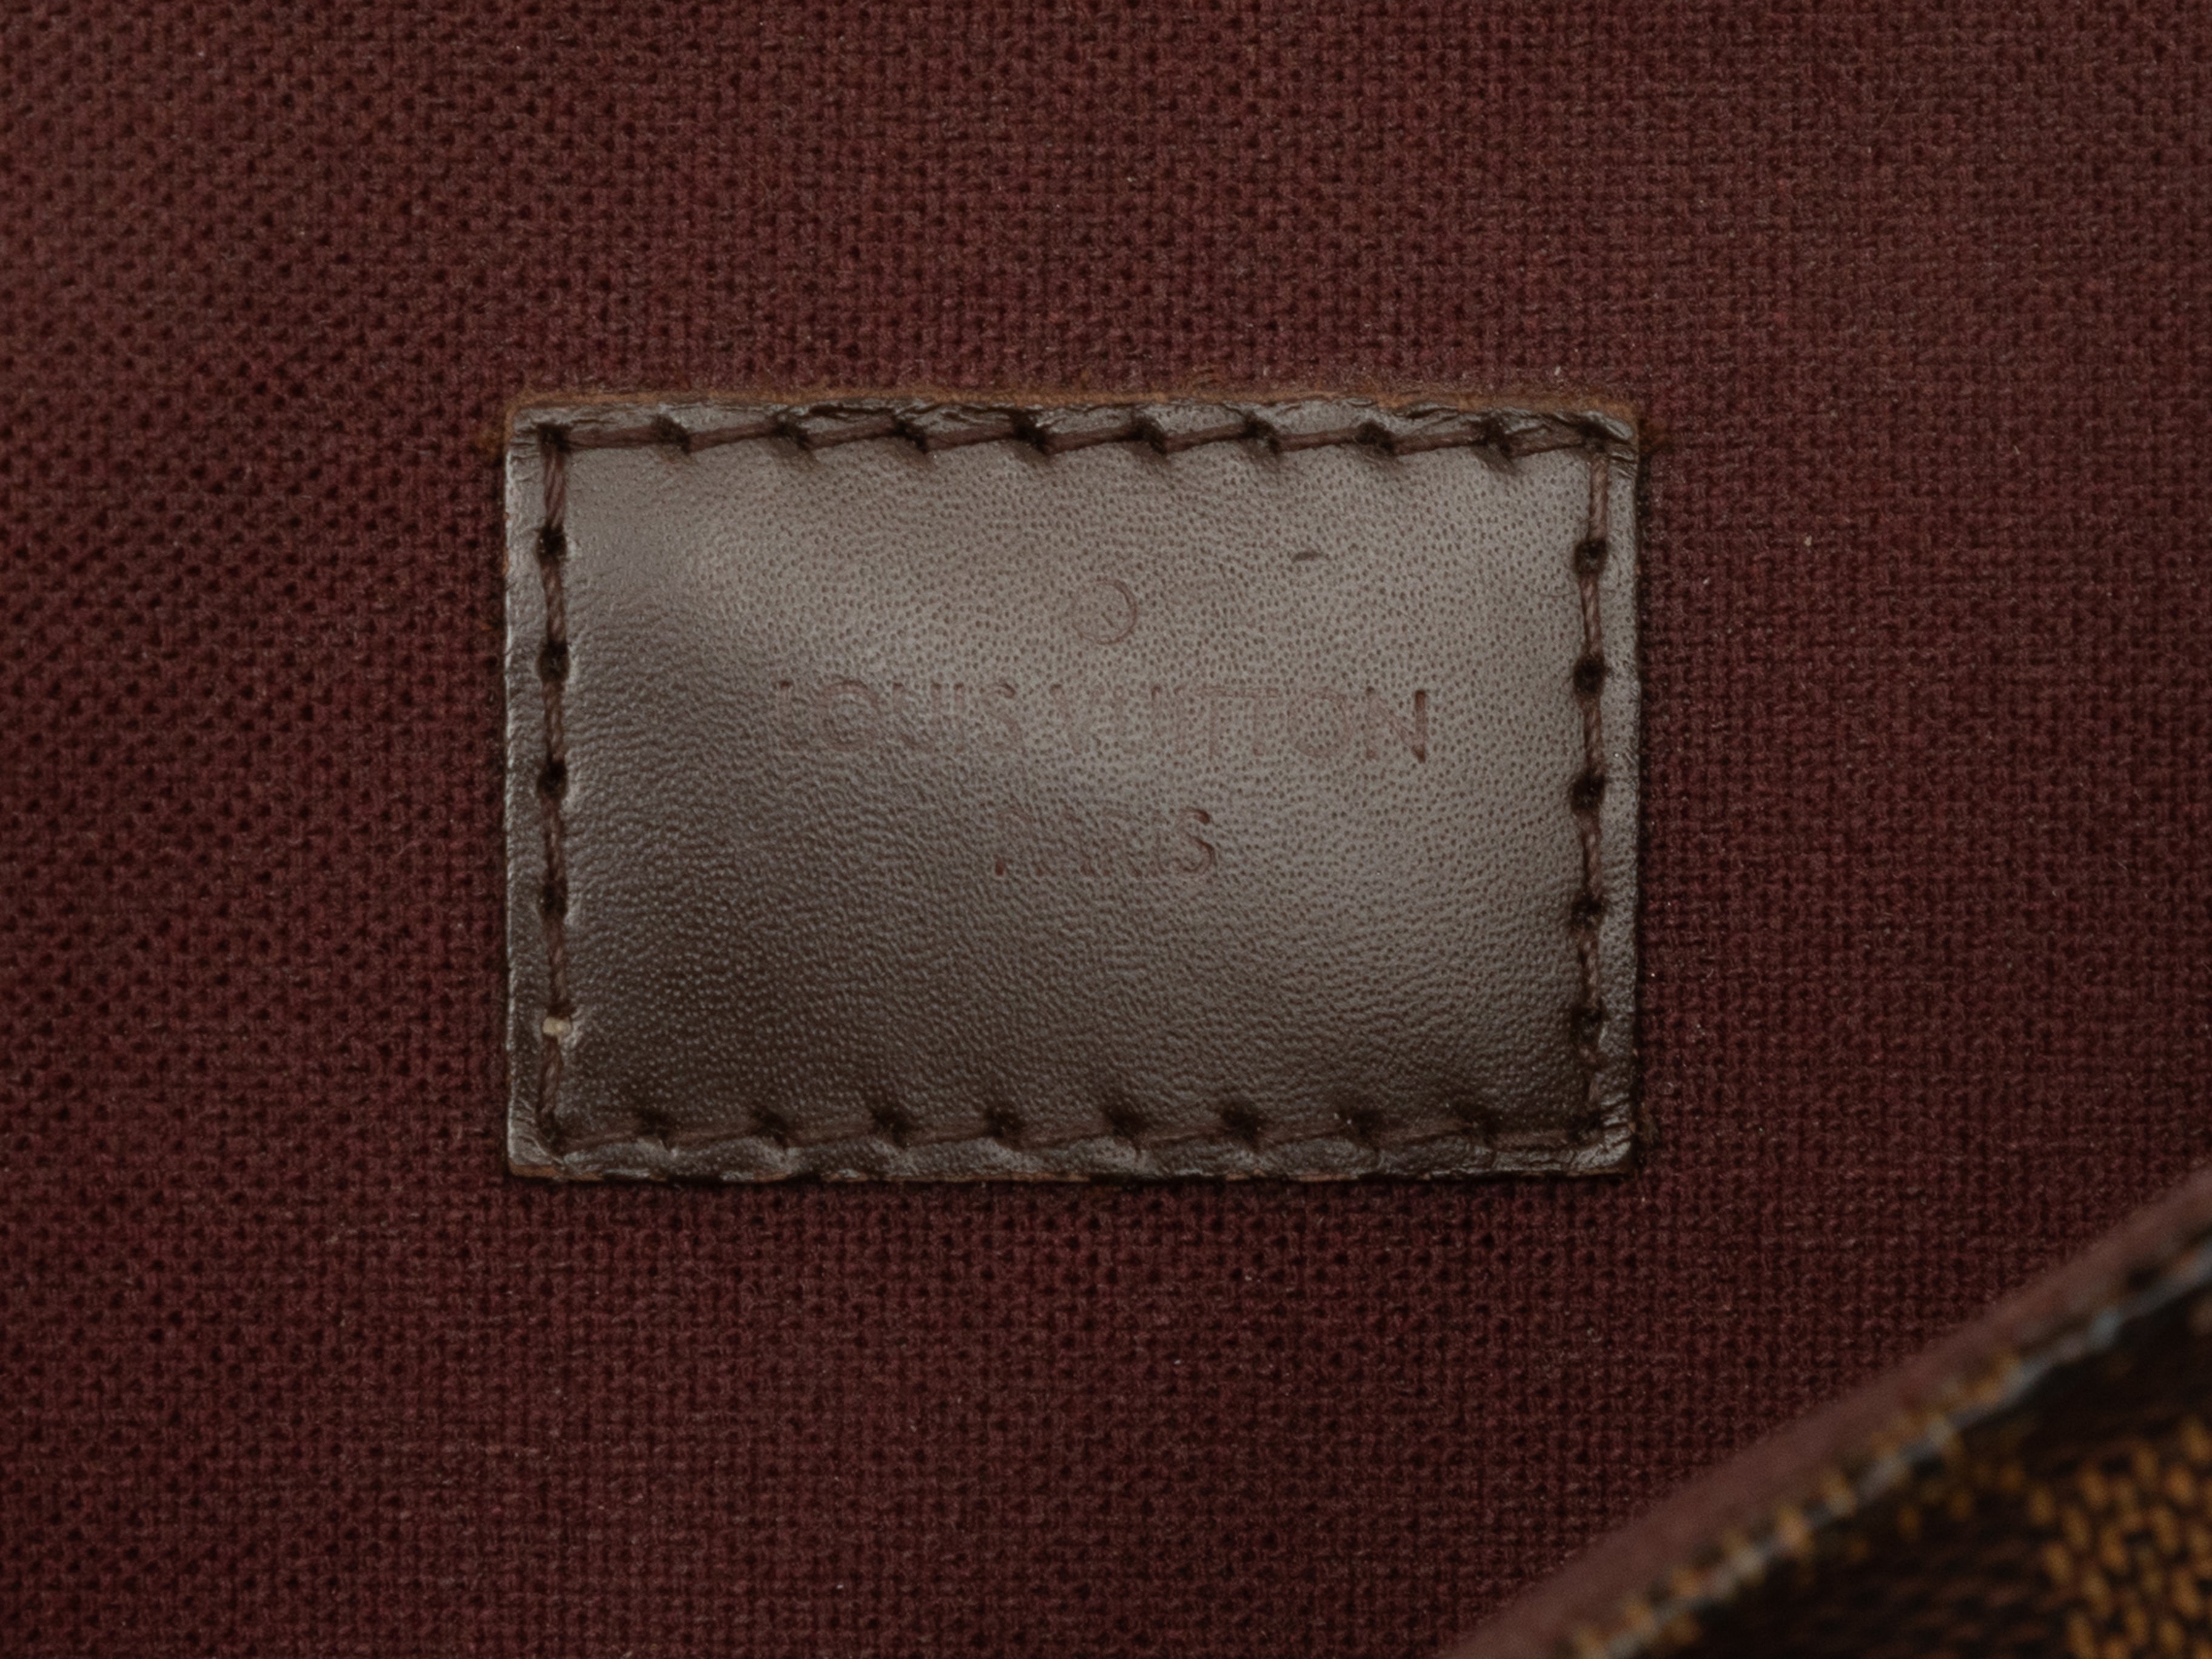 Louis Vuitton Hoxton PM Damier Shoulder Bag